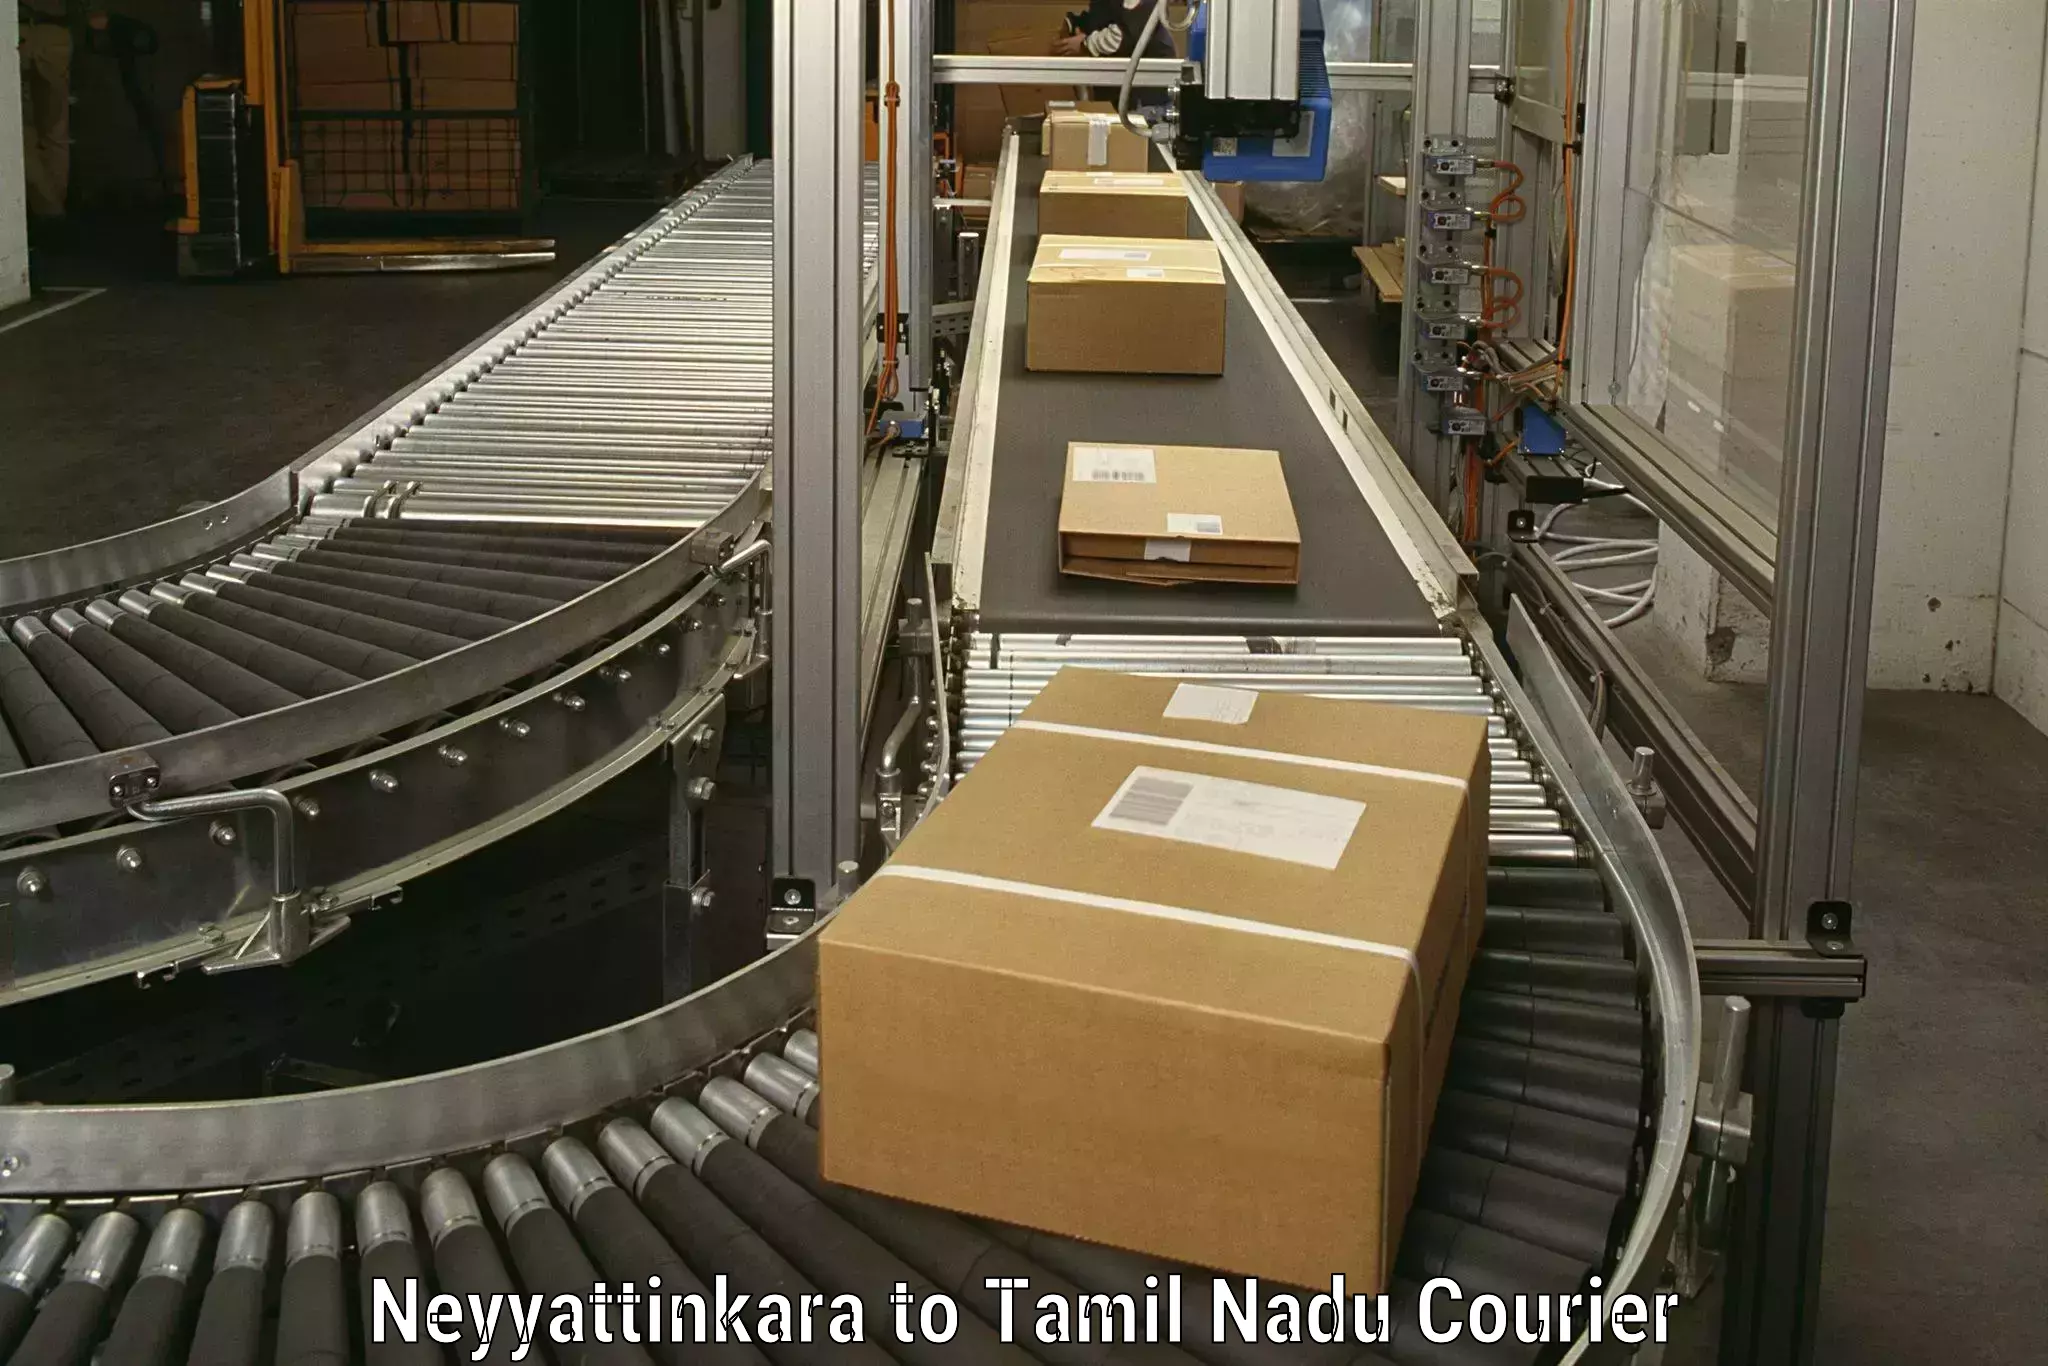 Home moving specialists Neyyattinkara to Villupuram